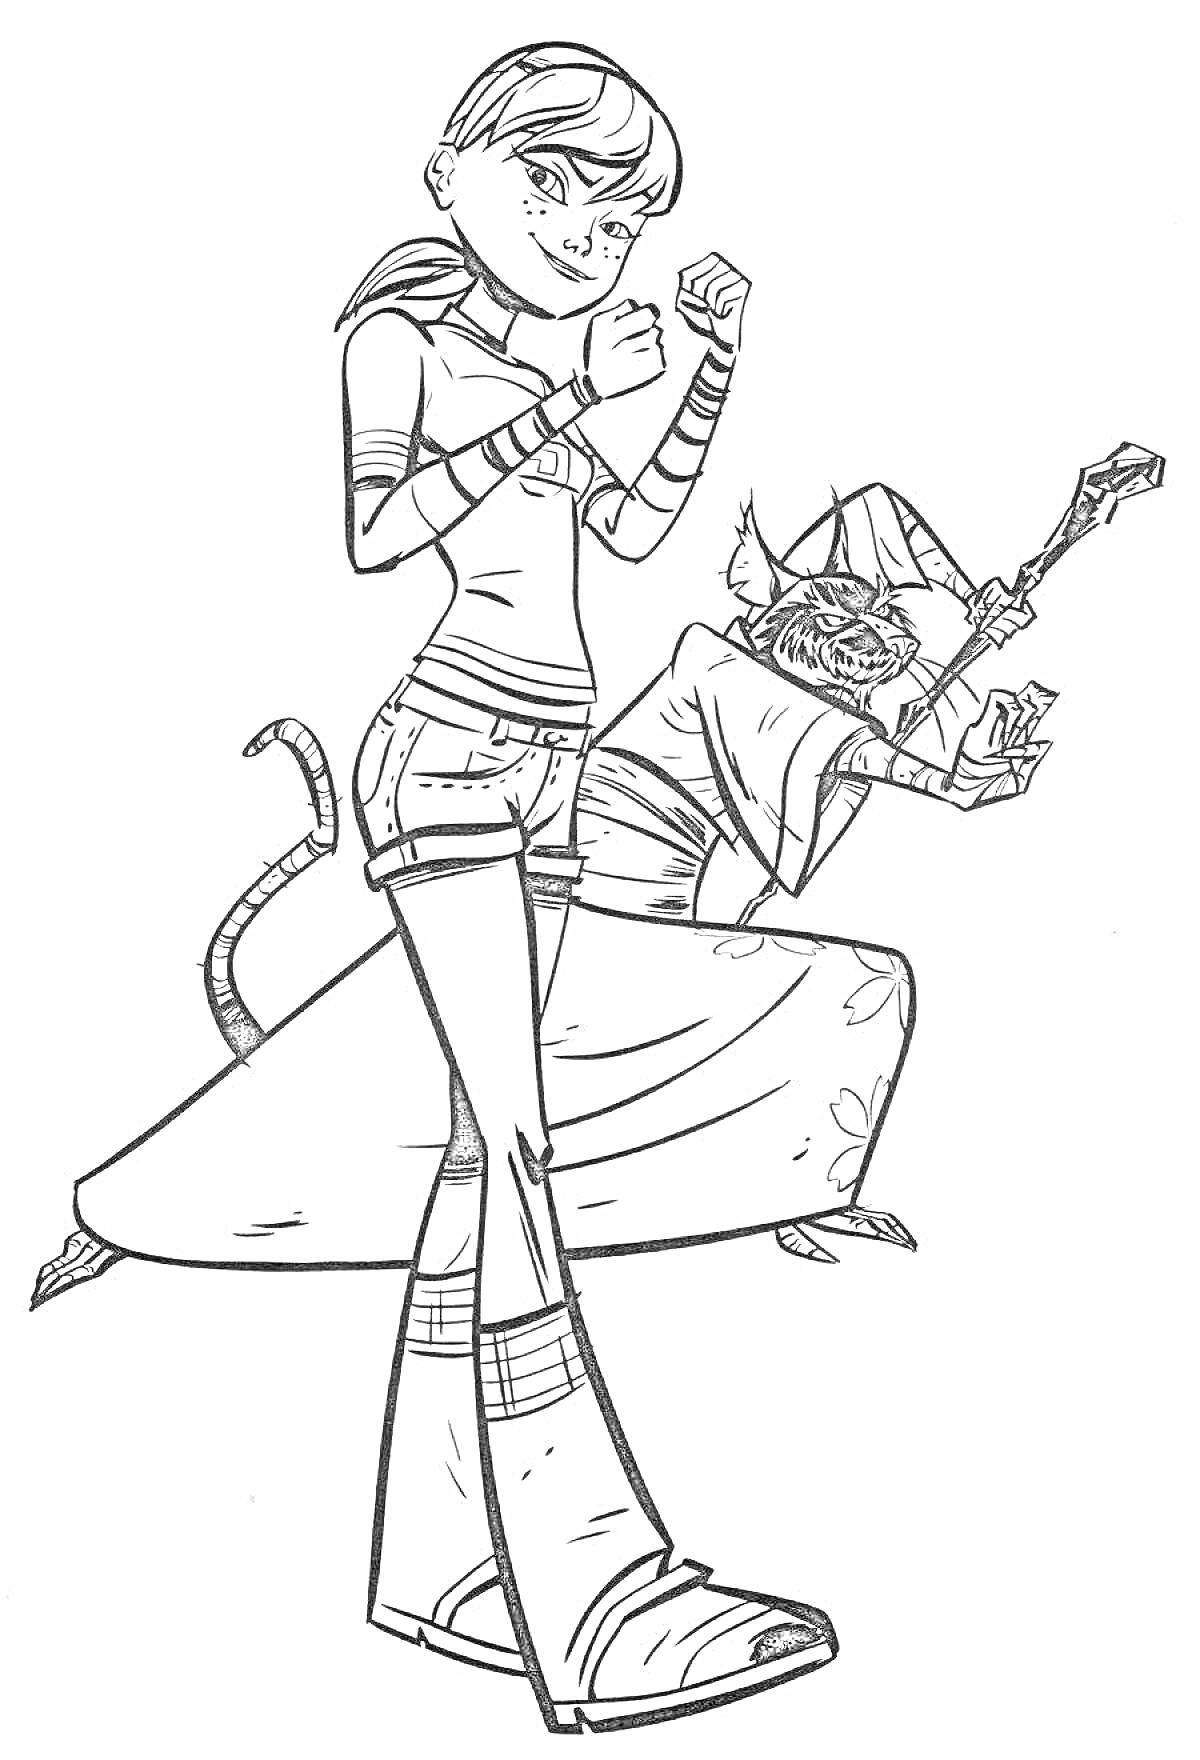 Раскраска Девушка ниндзя в боевой стойке вместе с мастером крысой с посохом